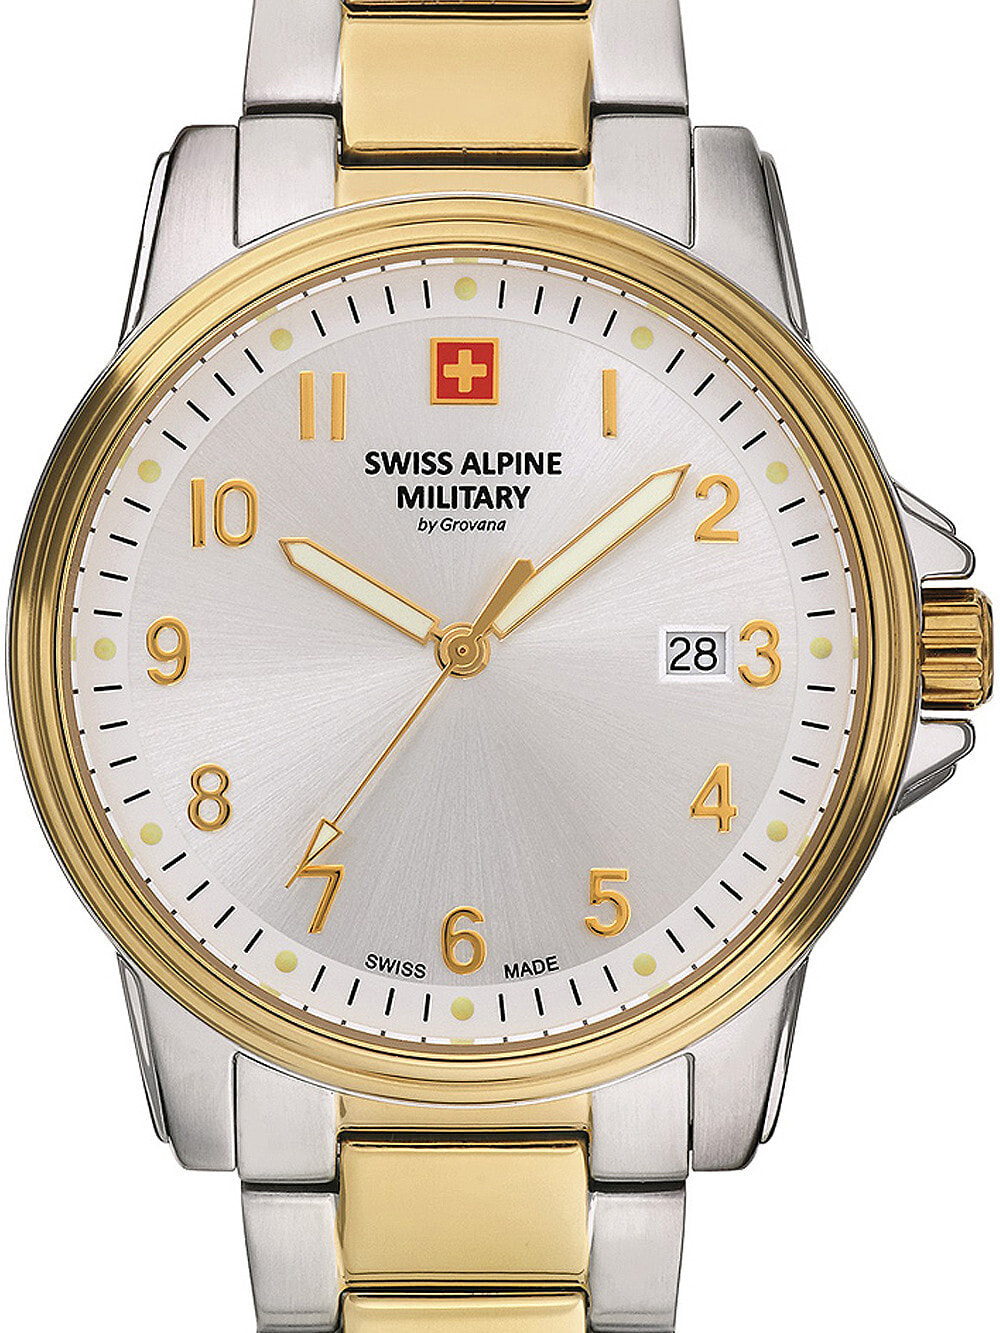 Мужские наручные часы с серебряным браслетом Swiss Alpine Military 7011.1142 mens 40mm 10ATM